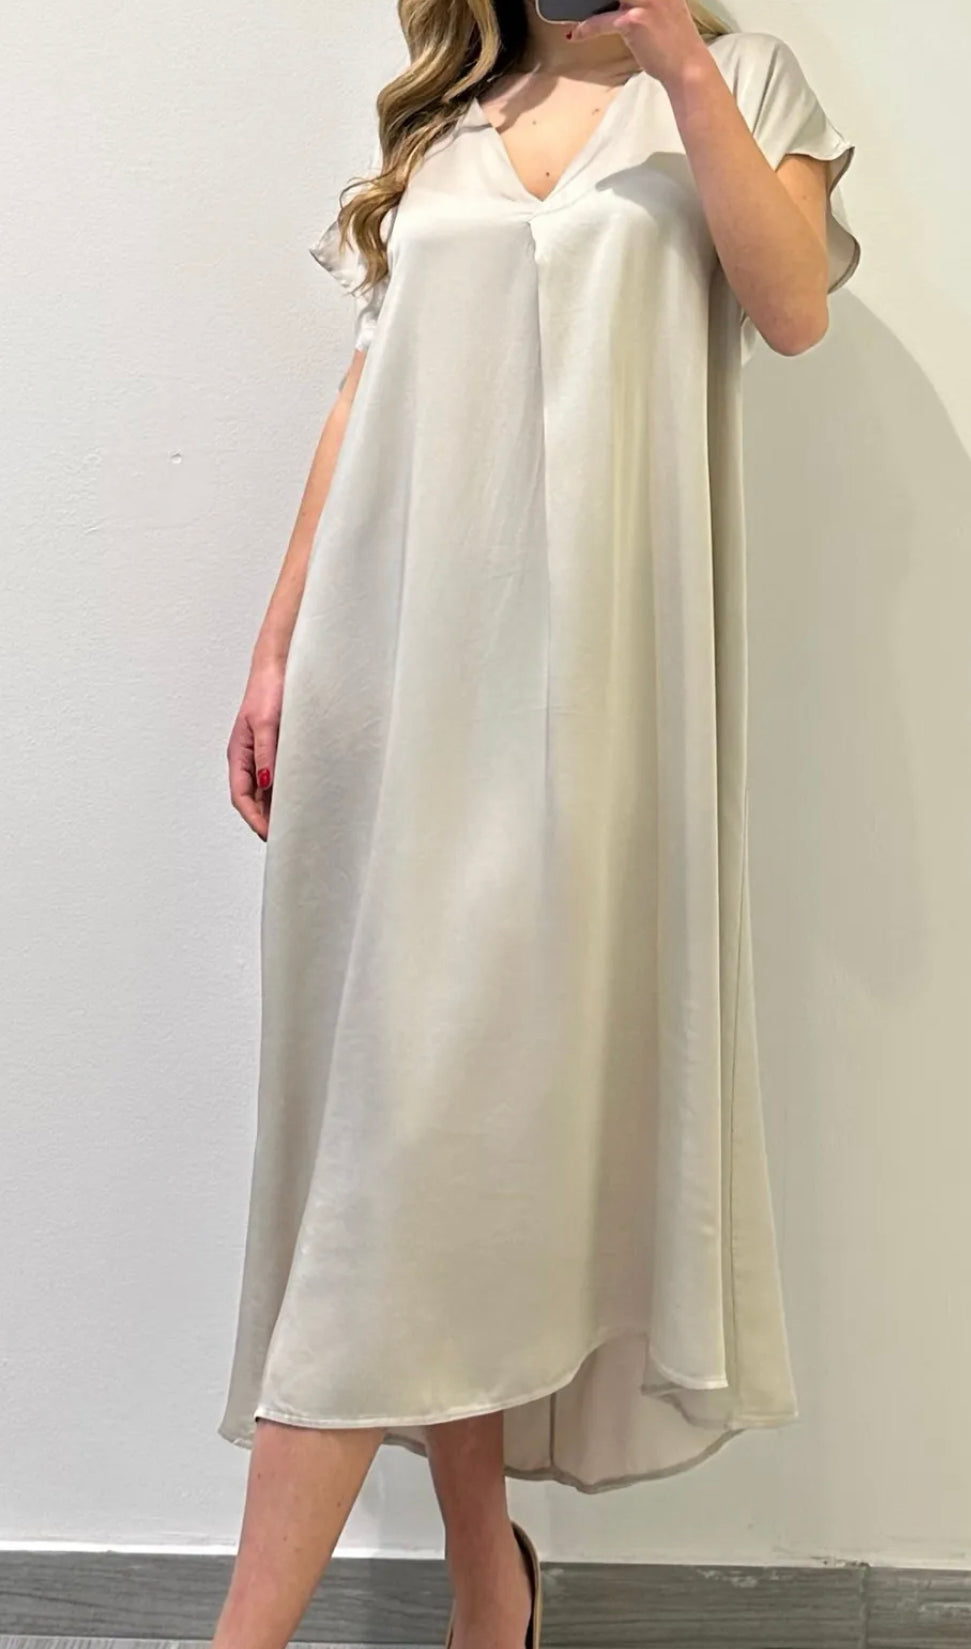 EL- 82309 Robe / Dress